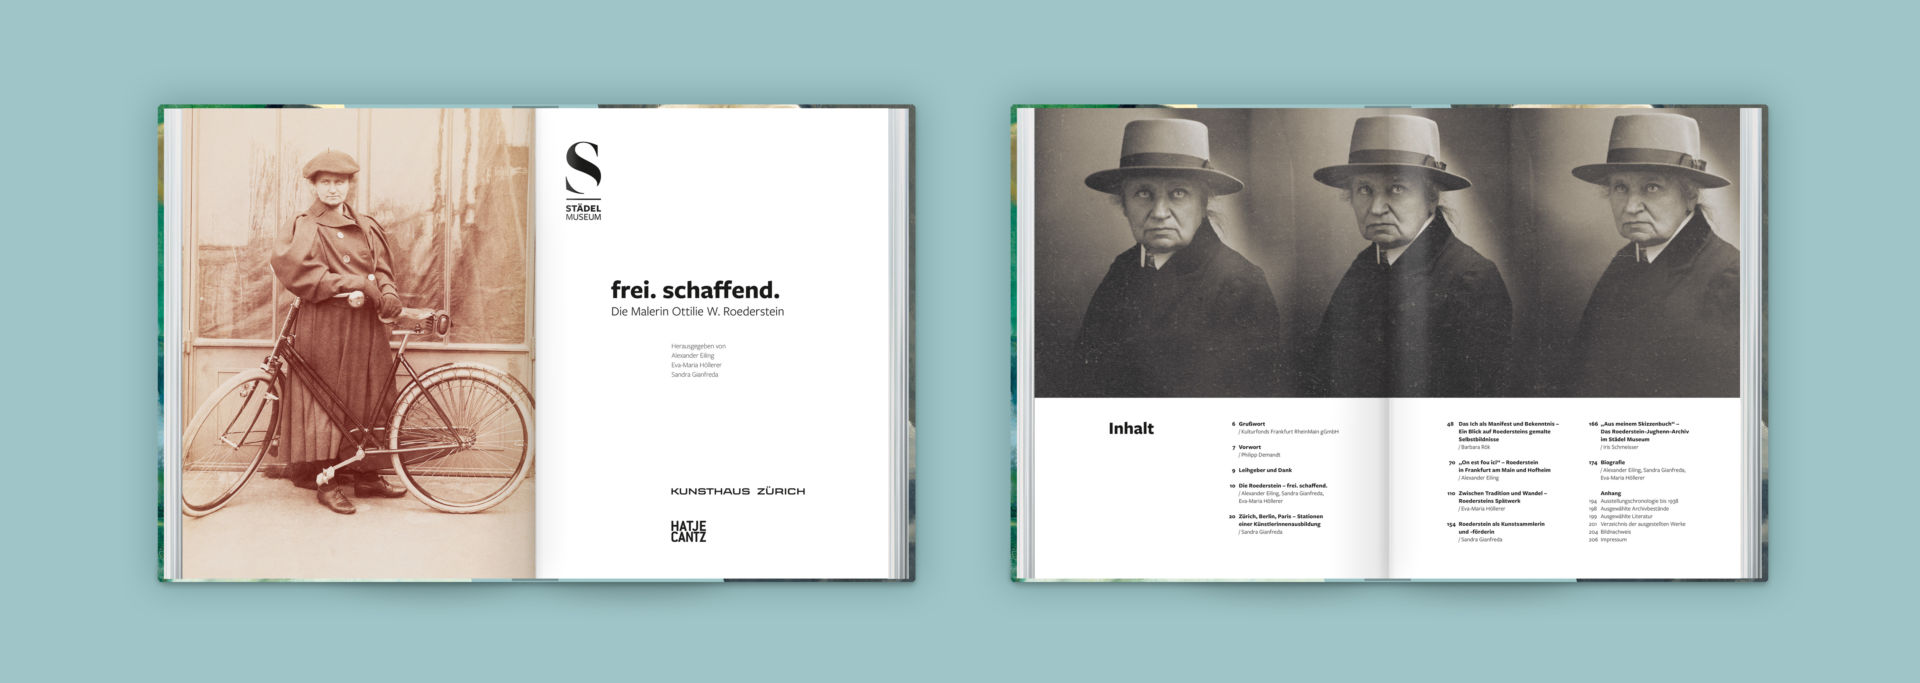 Staedel Museum Katalog Ausstellung frei. schaffend. Ottilie W. Roederstein Innenseiten Buchgestaltung auf farbigem Hintergrund 